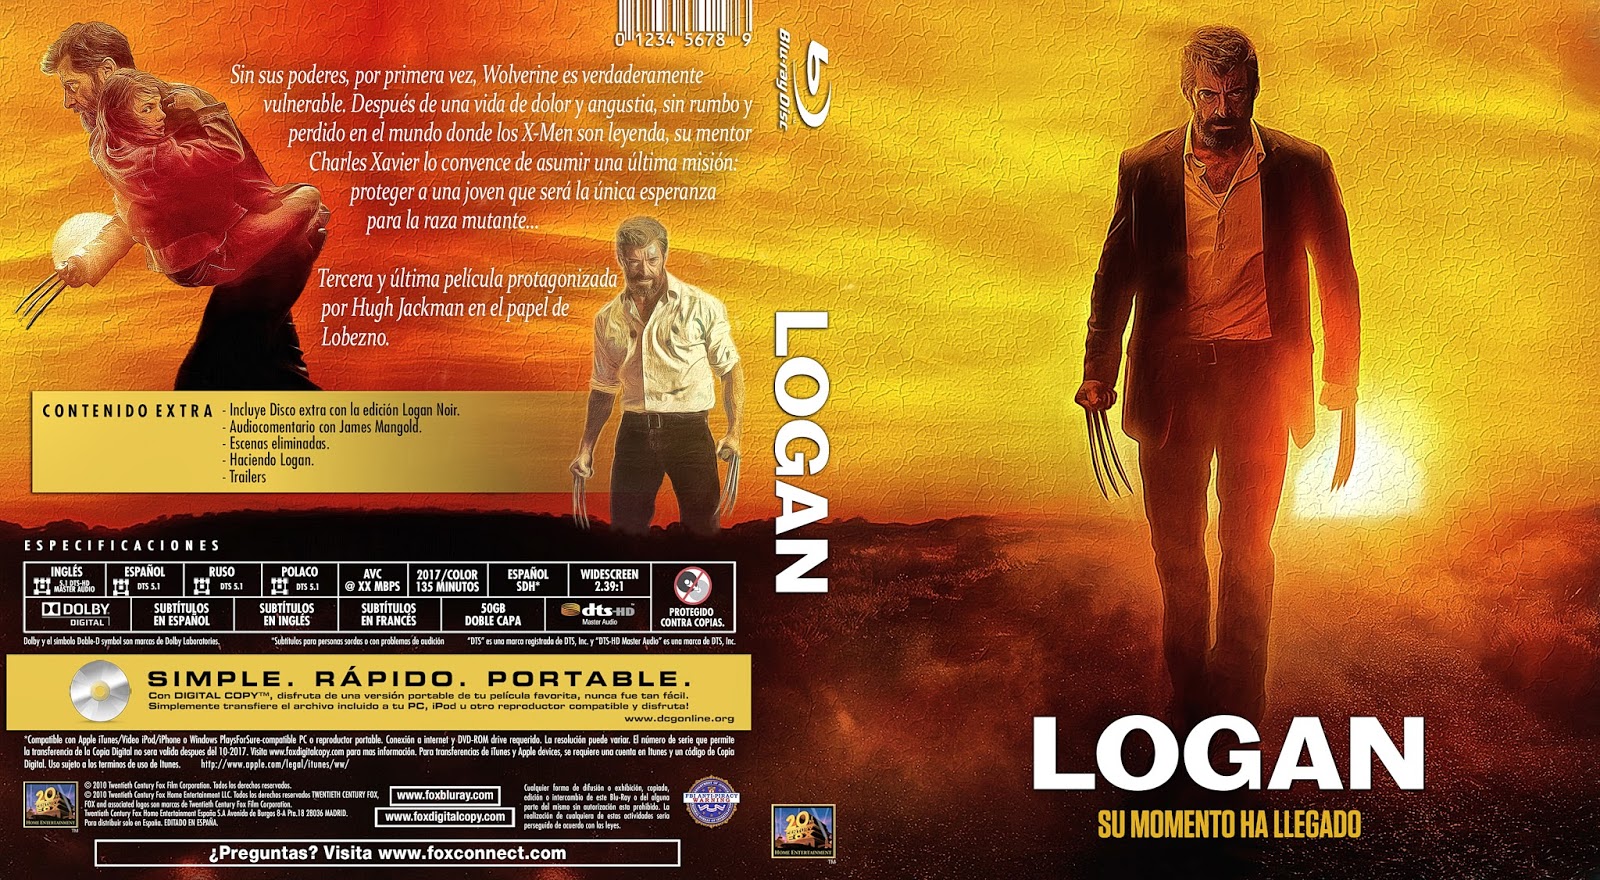 Logan es una película estadounidense del año 2017 basada en la ultima trilo...